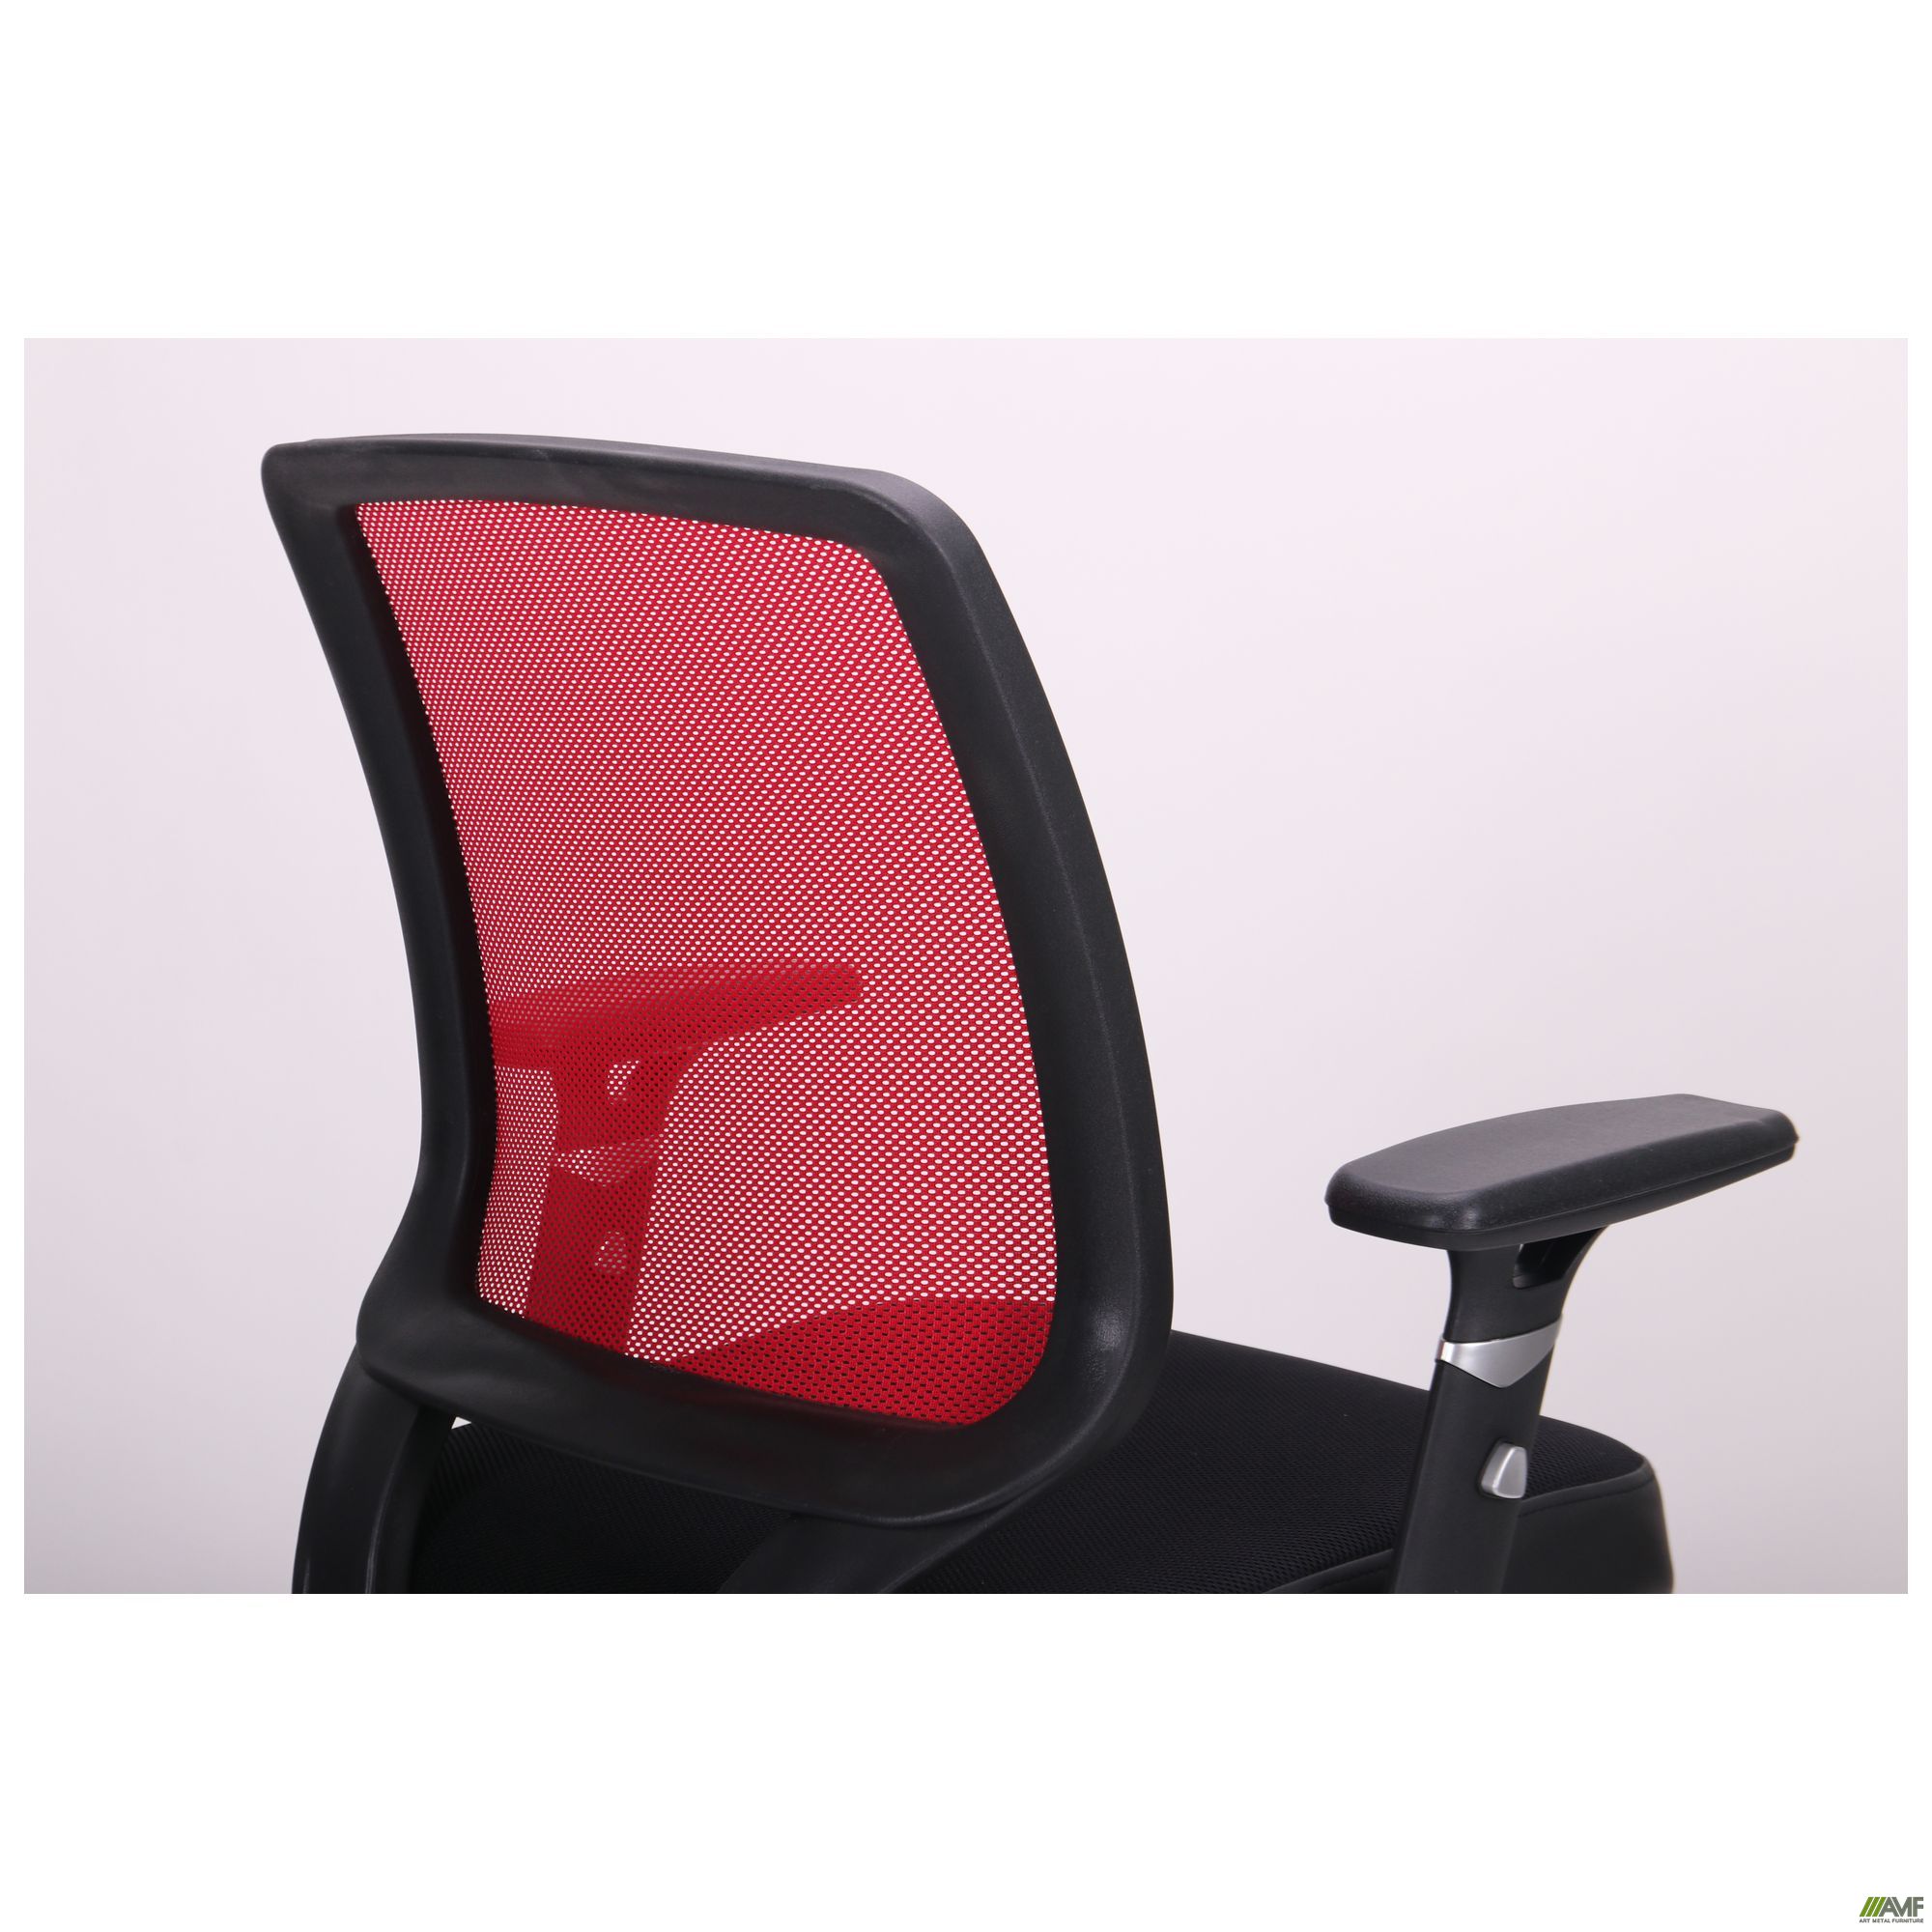 Фото 6 - Кресло Онлайн сиденье Сетка черная/спинка Сетка красная 